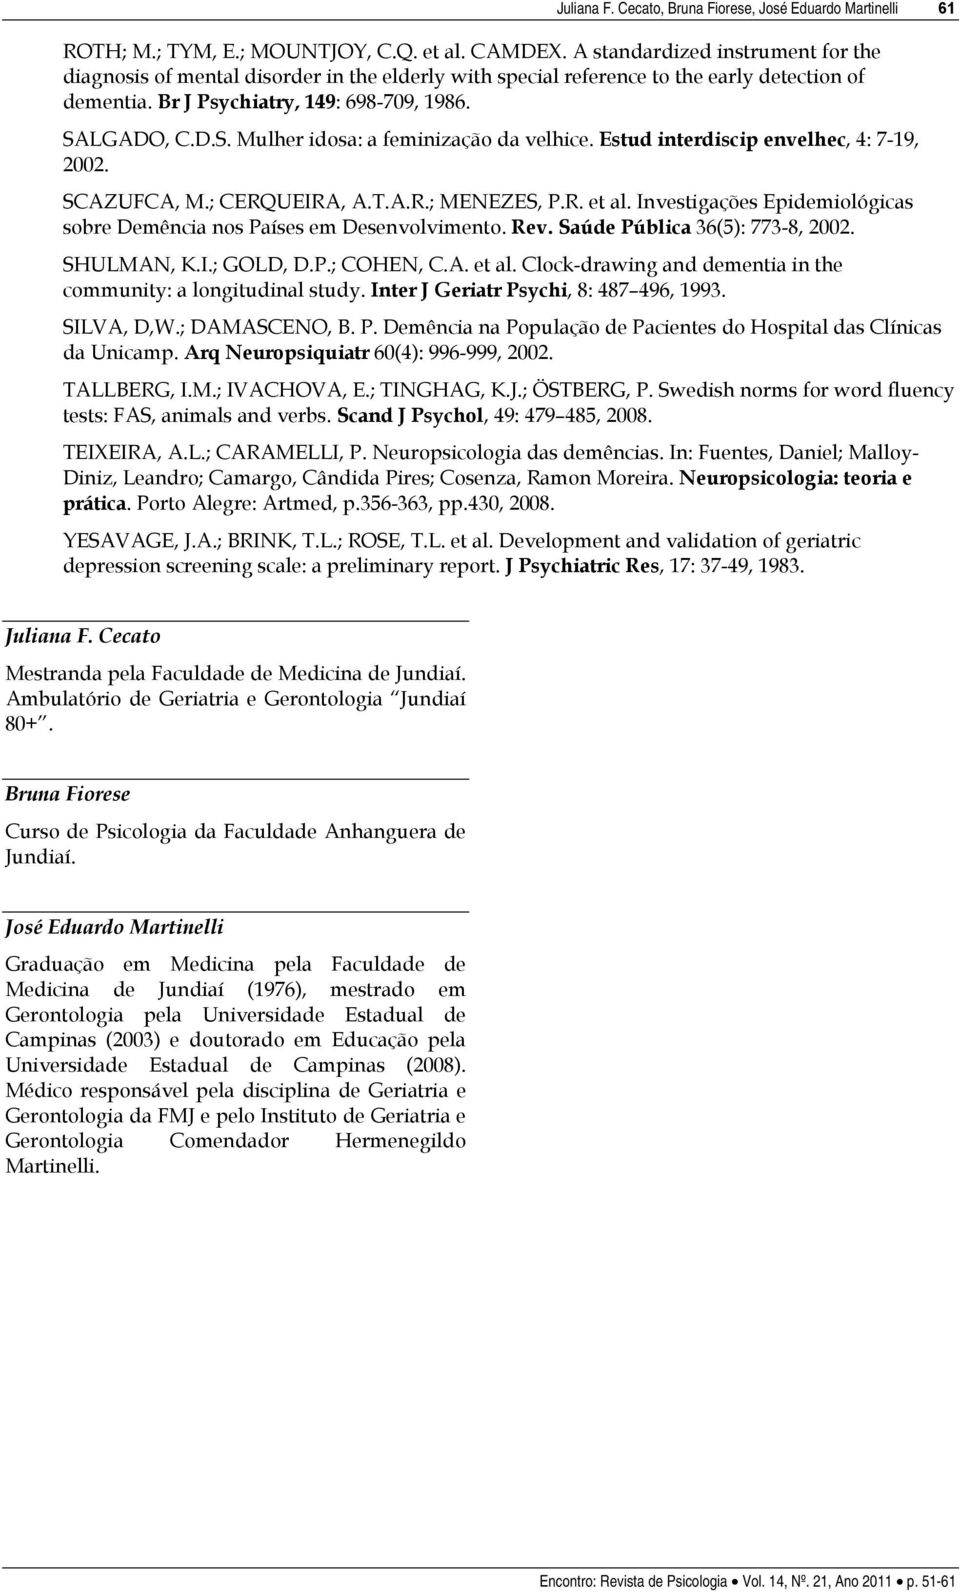 LGADO, C.D.S. Mulher idosa: a feminização da velhice. Estud interdiscip envelhec, 4: 7-19, 2002. SCAZUFCA, M.; CERQUEIRA, A.T.A.R.; MENEZES, P.R. et al.